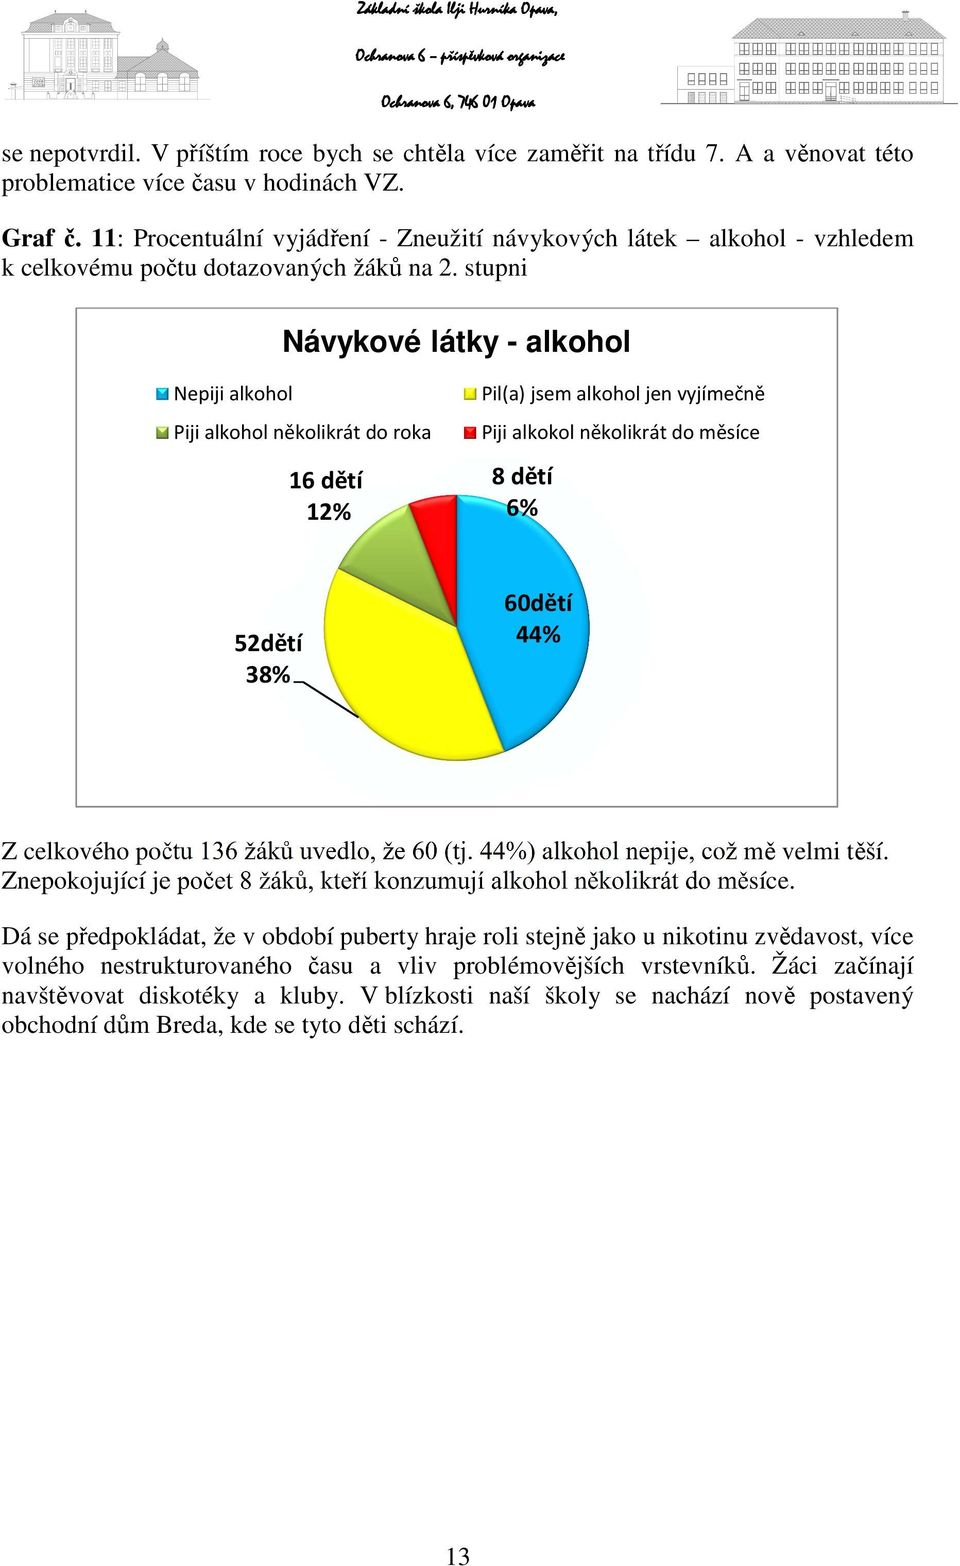 stupni Návykové látky - alkohol Nepiji alkohol Piji alkohol několikrát do roka 16 dětí 12% Pil(a) jsem alkohol jen vyjímečně Piji alkokol několikrát do měsíce 8 dětí 6% 52dětí 38% 60dětí 44% Z